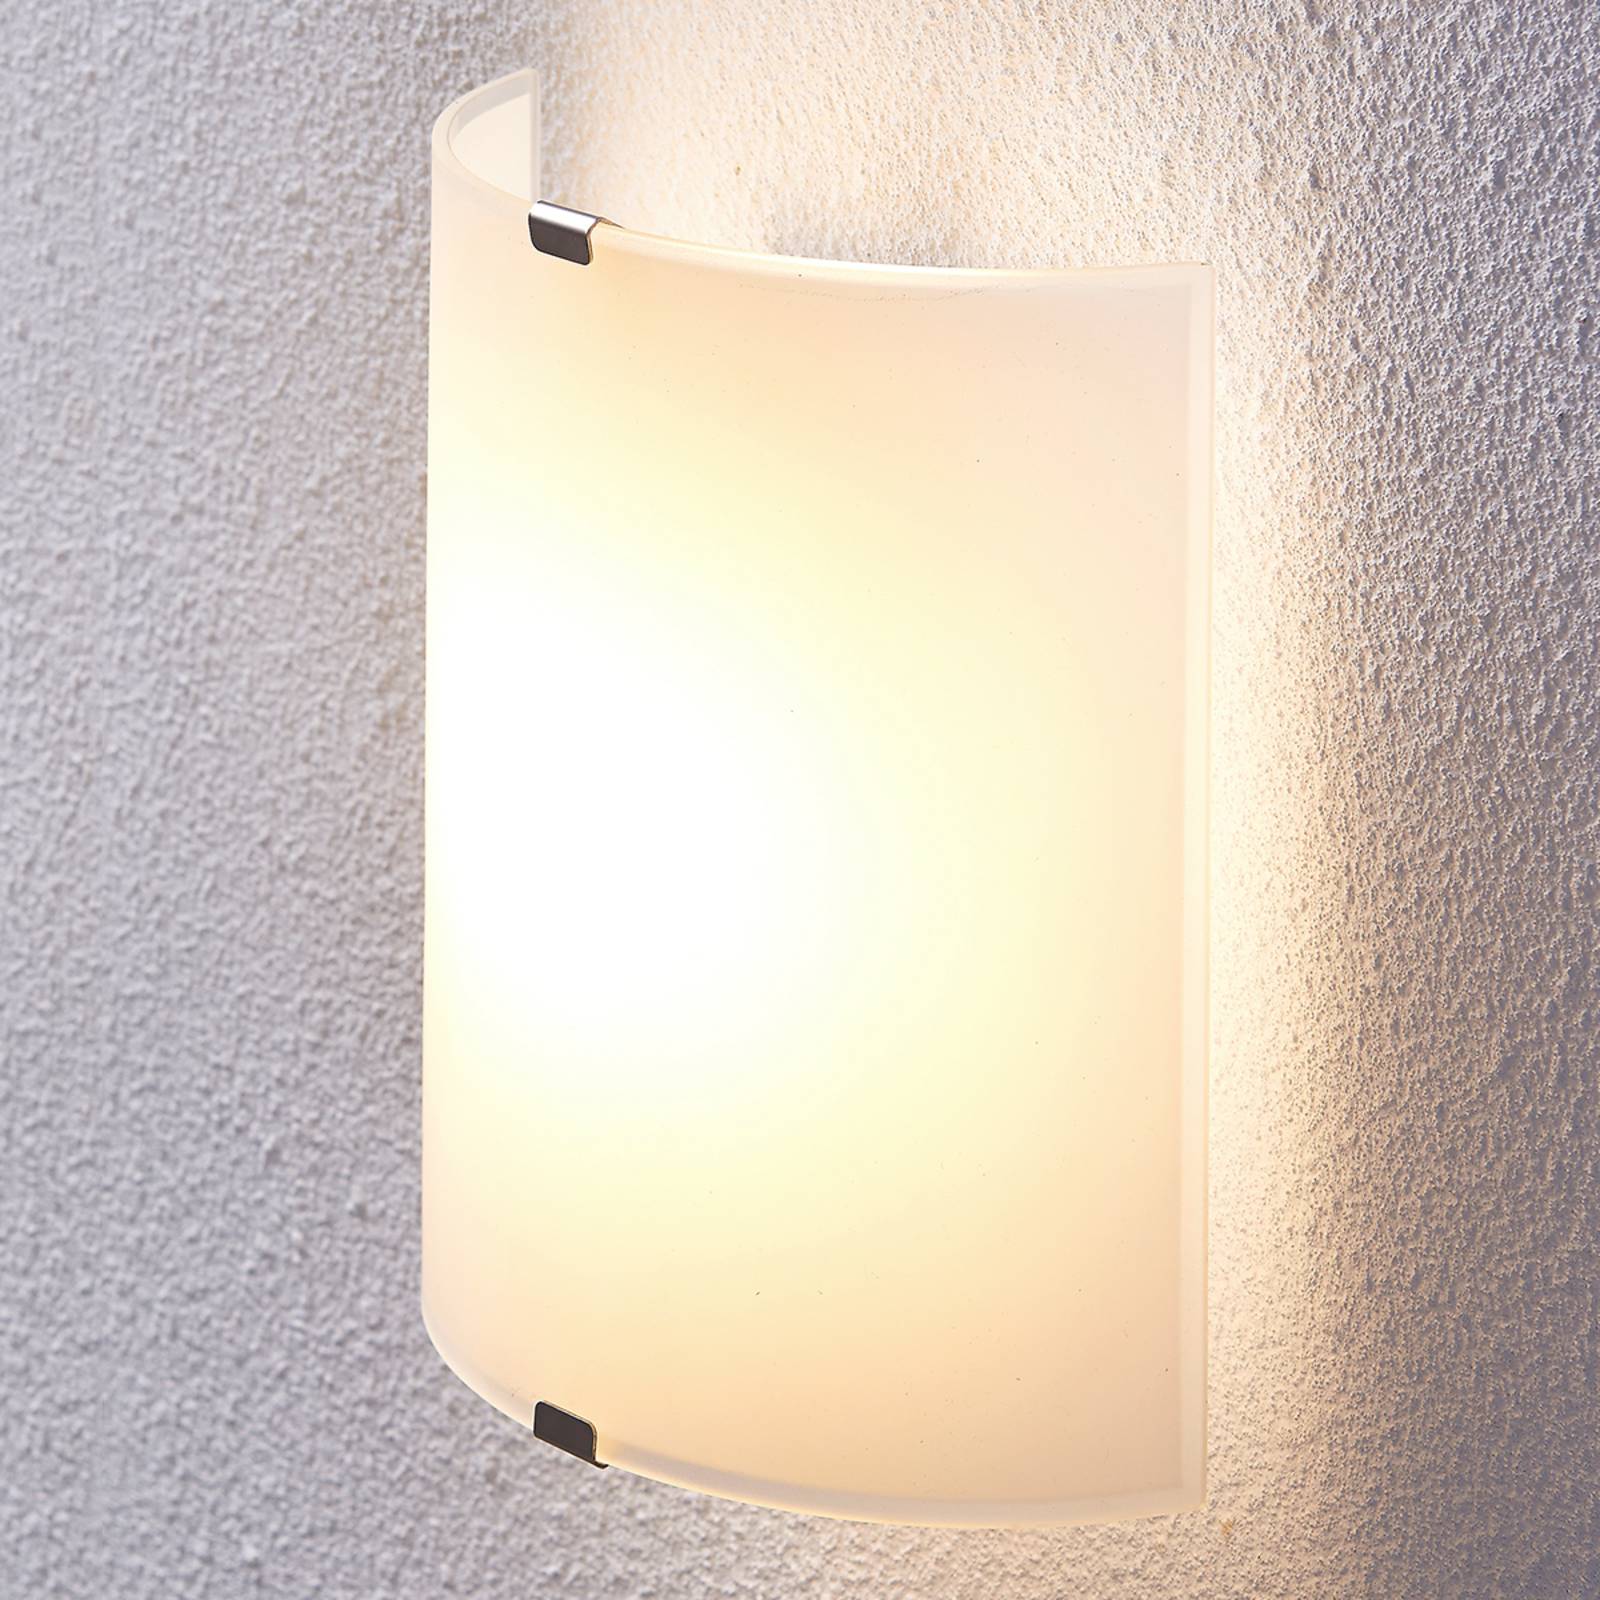 Helmi félkör alakú LED fali lámpa üvegbúrával